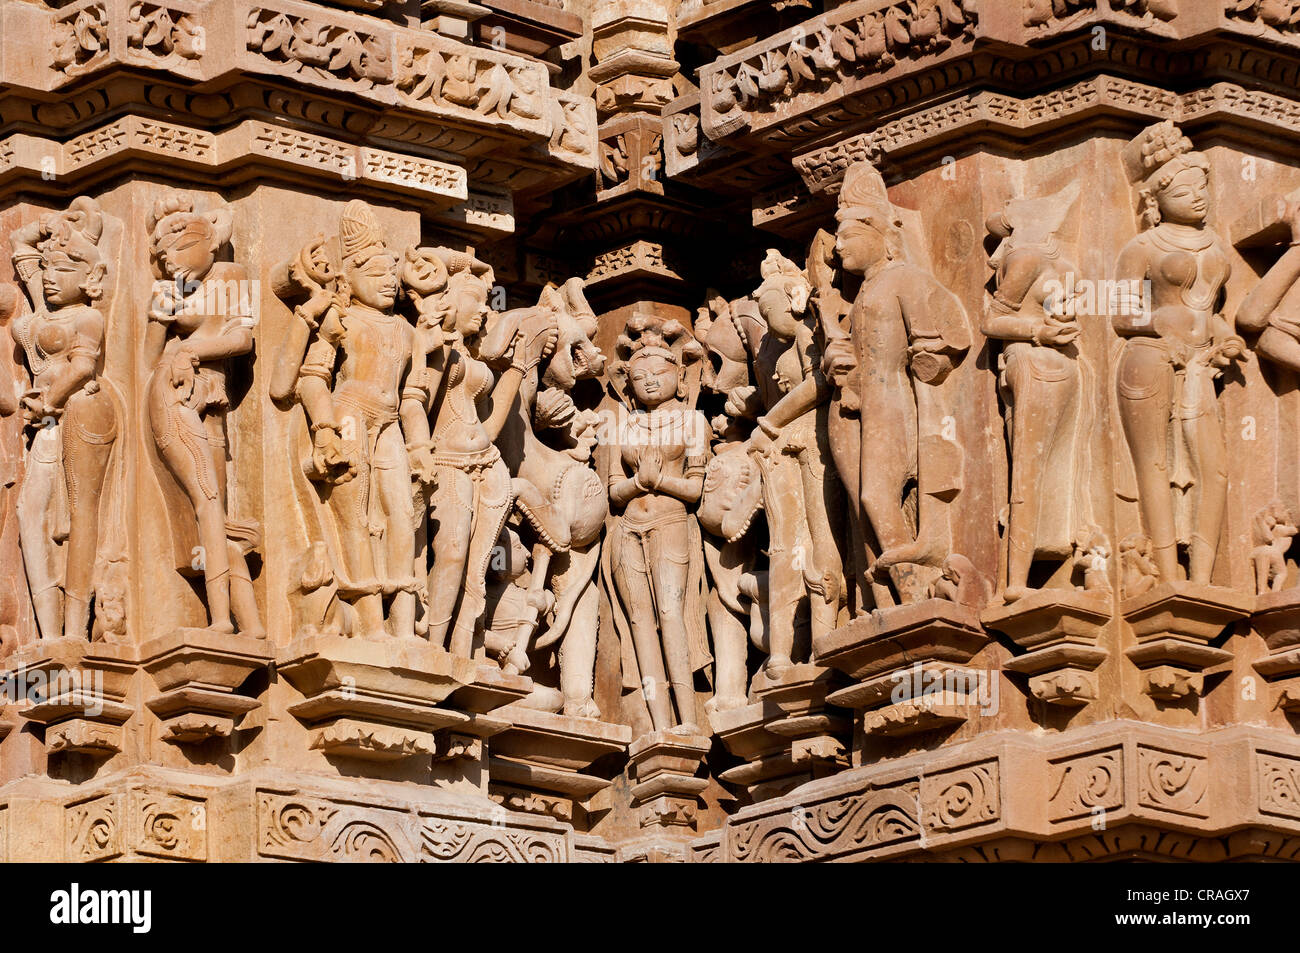 Dekorative Skulpturen, Hindu-Gottheiten, Khajuraho Gruppe von Denkmälern, UNESCO-Weltkulturerbe, Madhya Pradesh, Indien, Asien Stockfoto